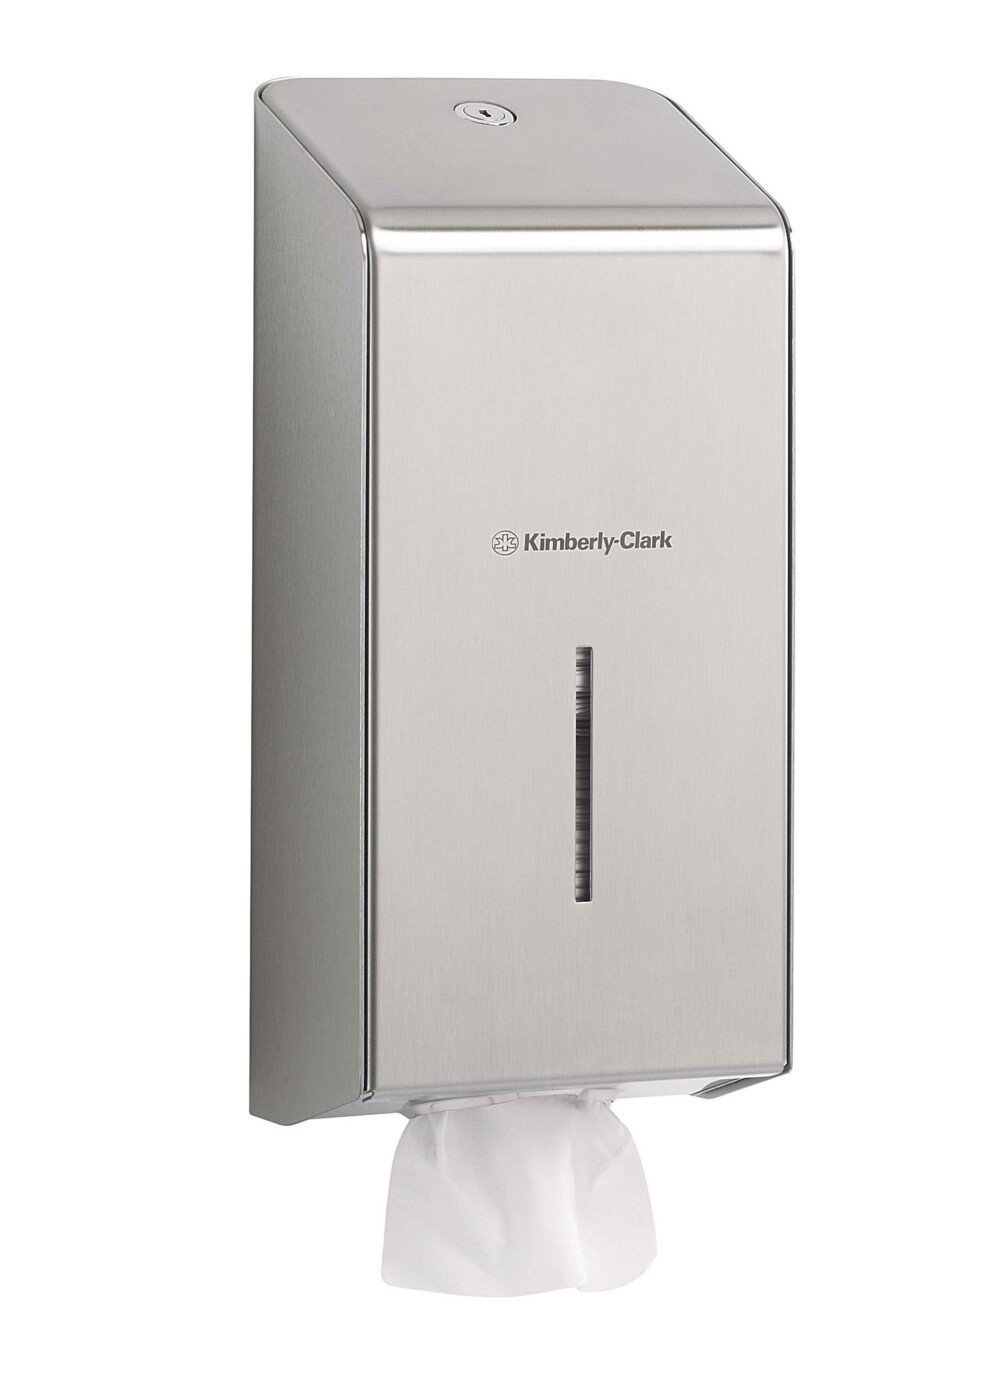 Kimberly-Clark Professional™ Stainless Steel Folded Toilet Tissue Dispenser 8972 - Single Sheet Toilet Paper Dispenser - 1 x Stainless Steel Dispenser - 8972